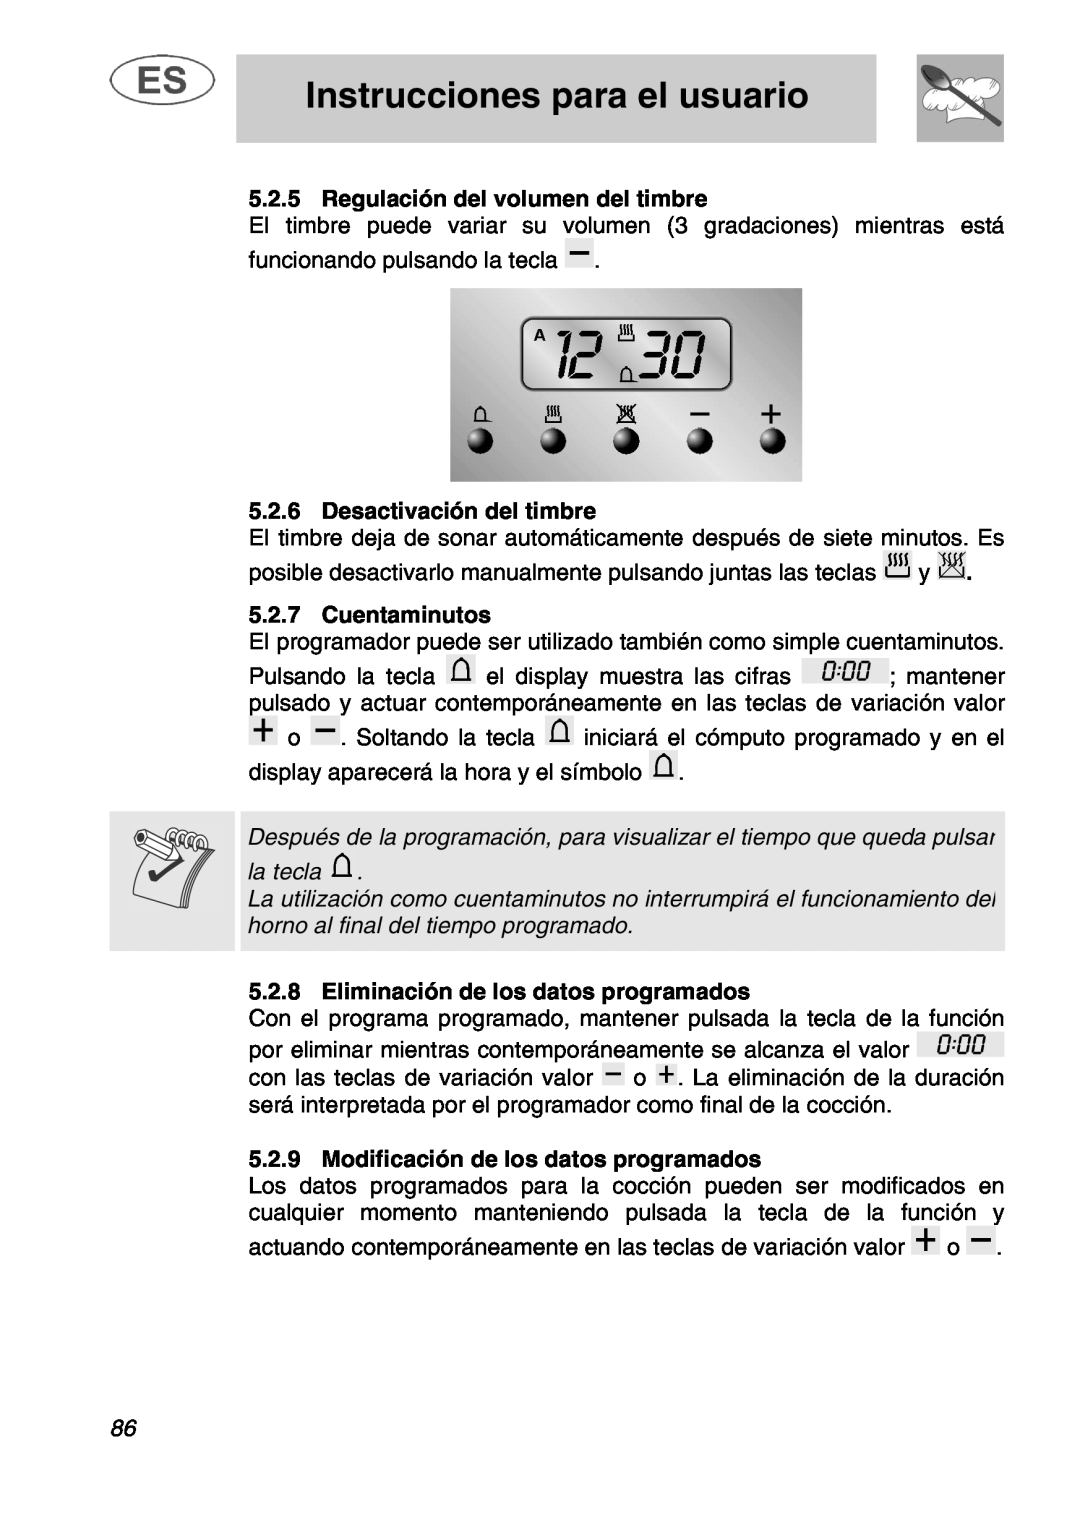 Smeg A1.1 Regulación del volumen del timbre, Desactivación del timbre, Cuentaminutos, Eliminación de los datos programados 